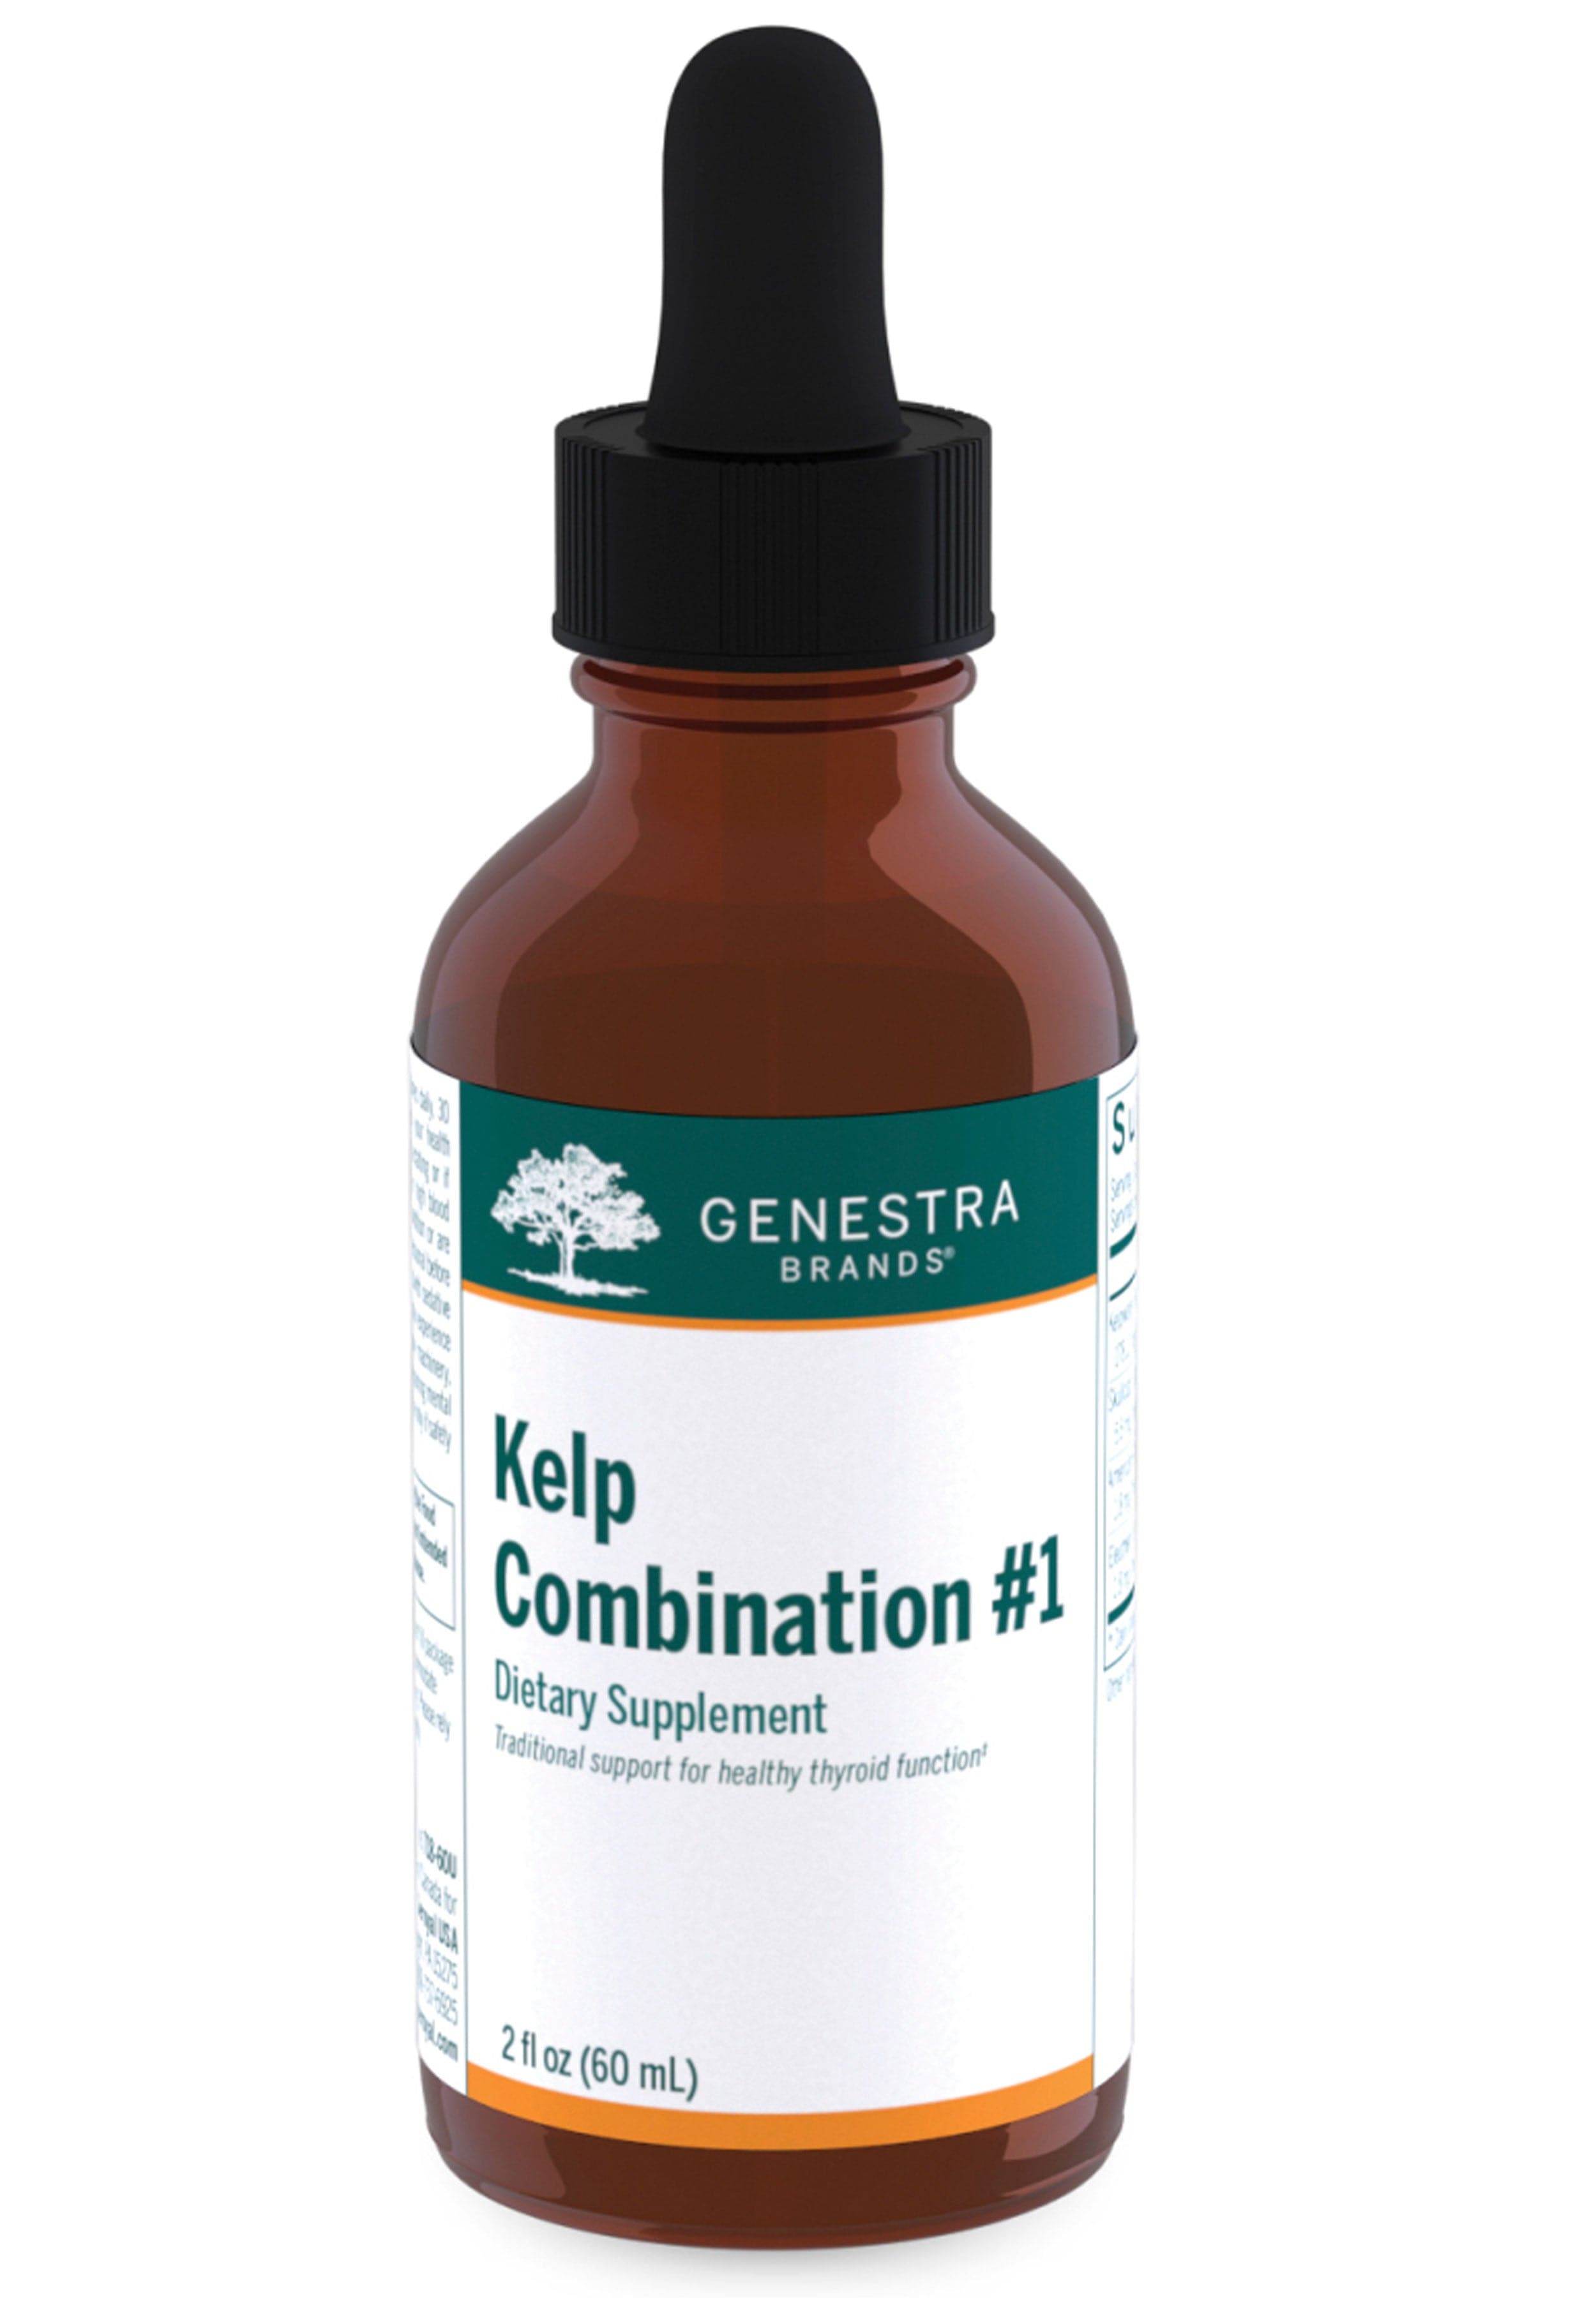 Genestra Brands Kelp Combination #1